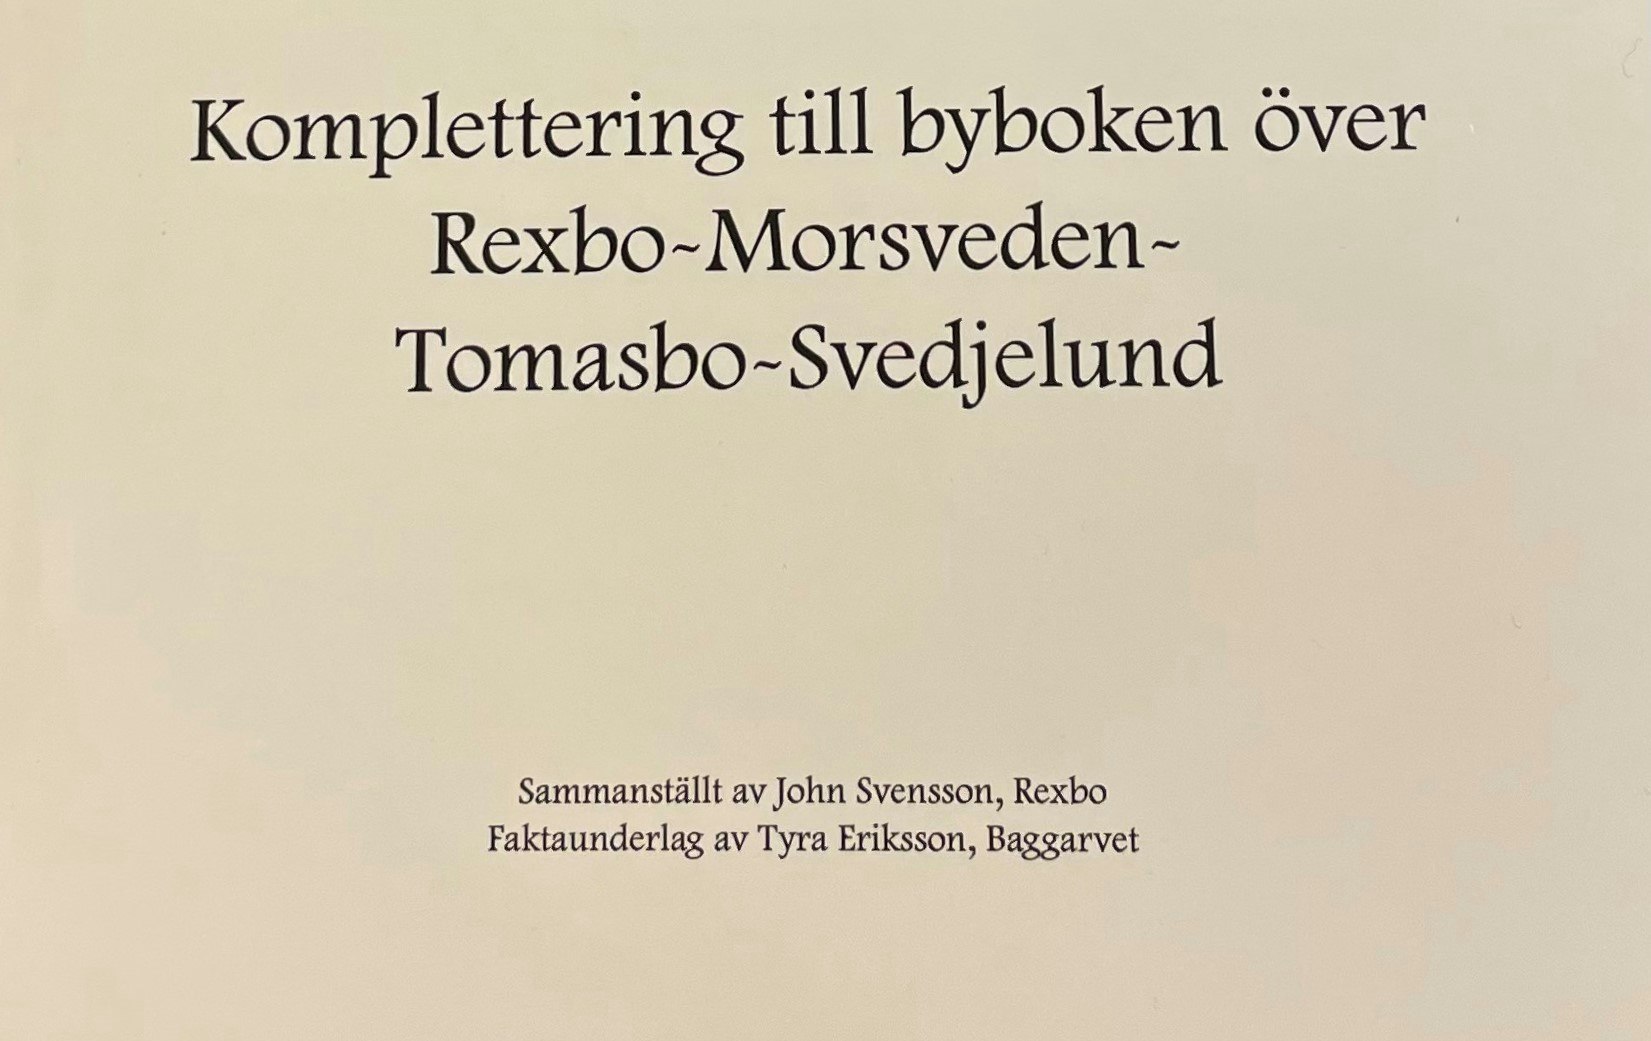 Komplettering till byboken Rexbo - Morsveden- Tomasbo - Svedjelund